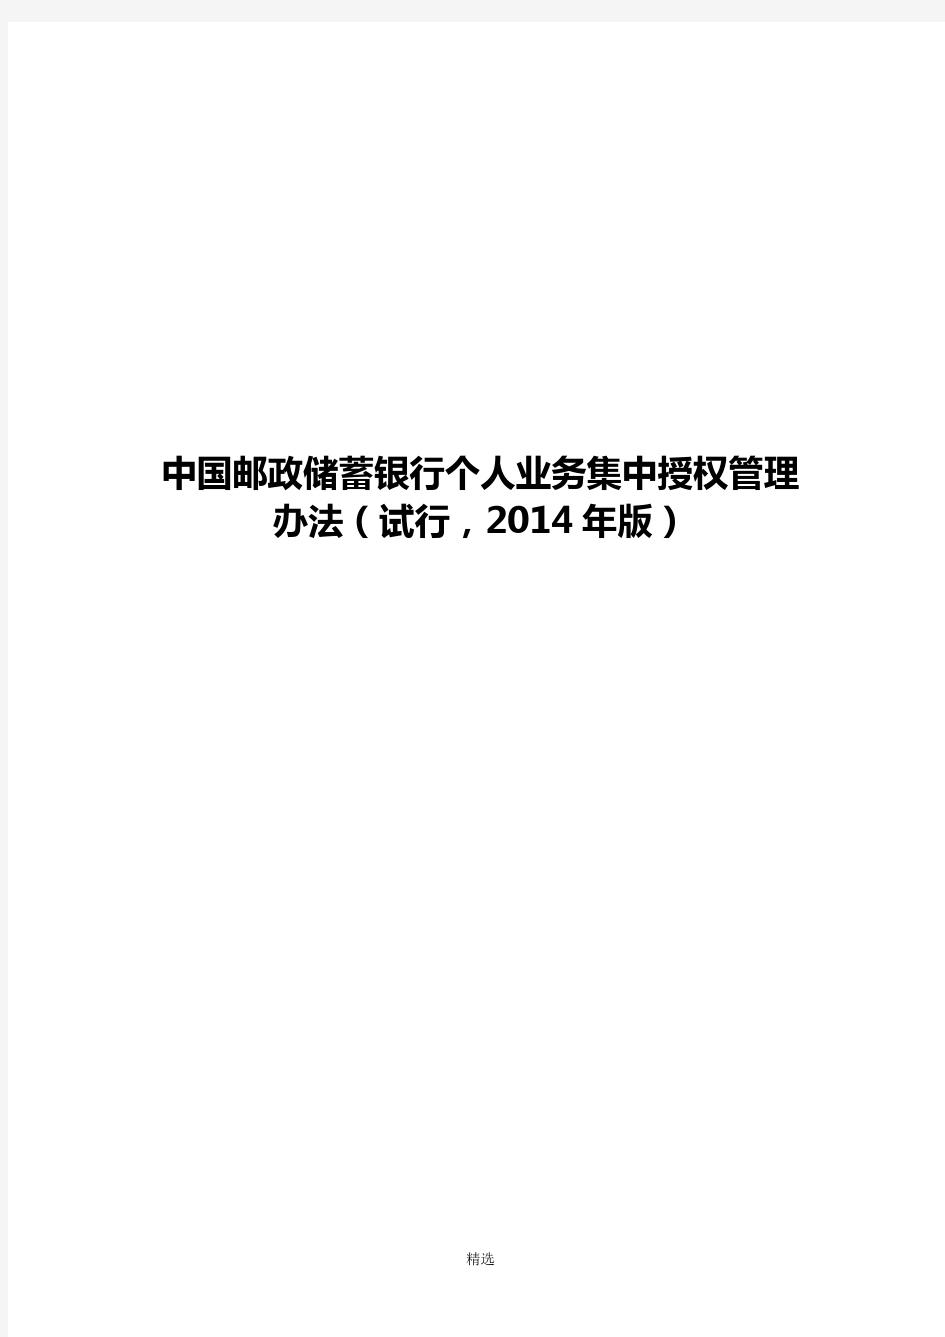 中国邮政储蓄银行个人业务集中授权管理办法(试行-2014年版)